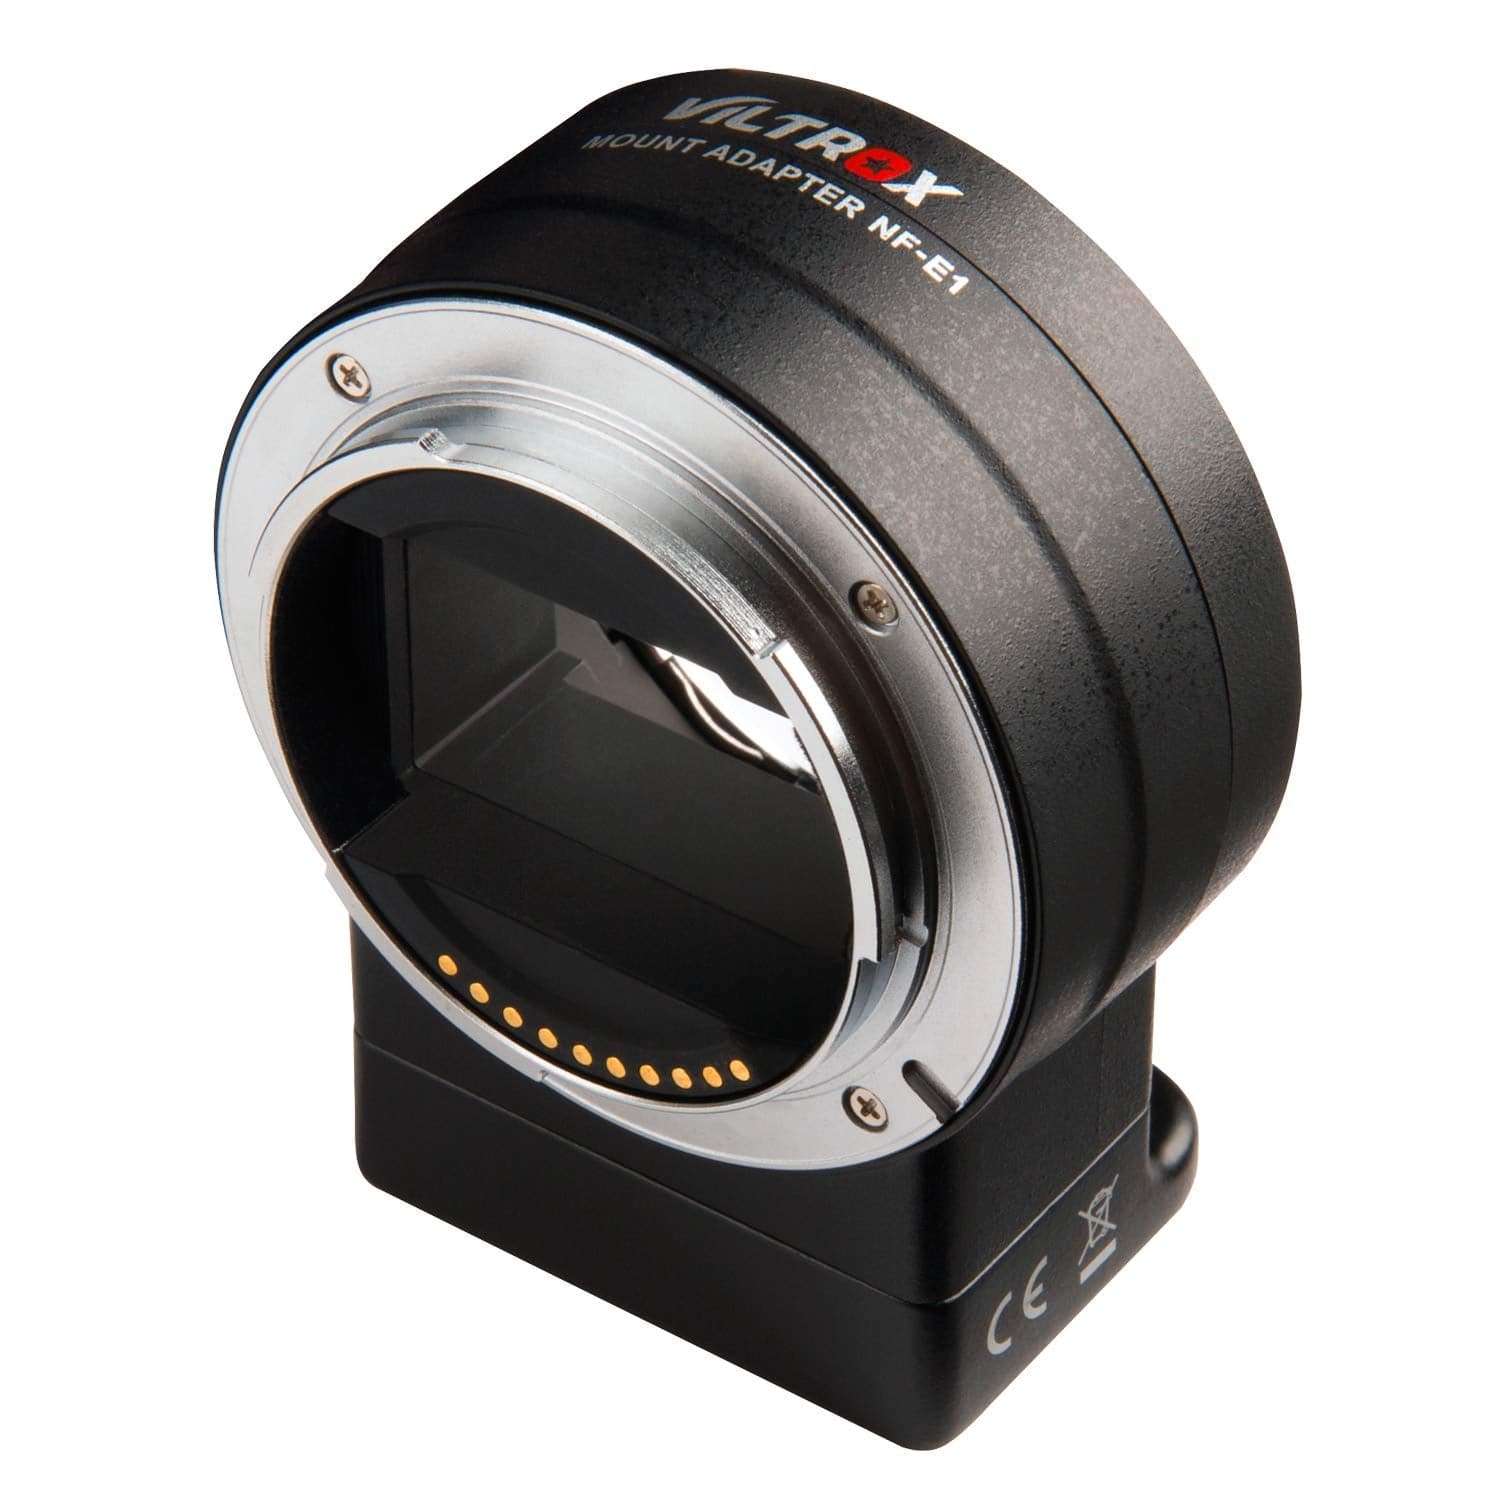 Viltrox NF-E1 AF Lens Mount Adapter